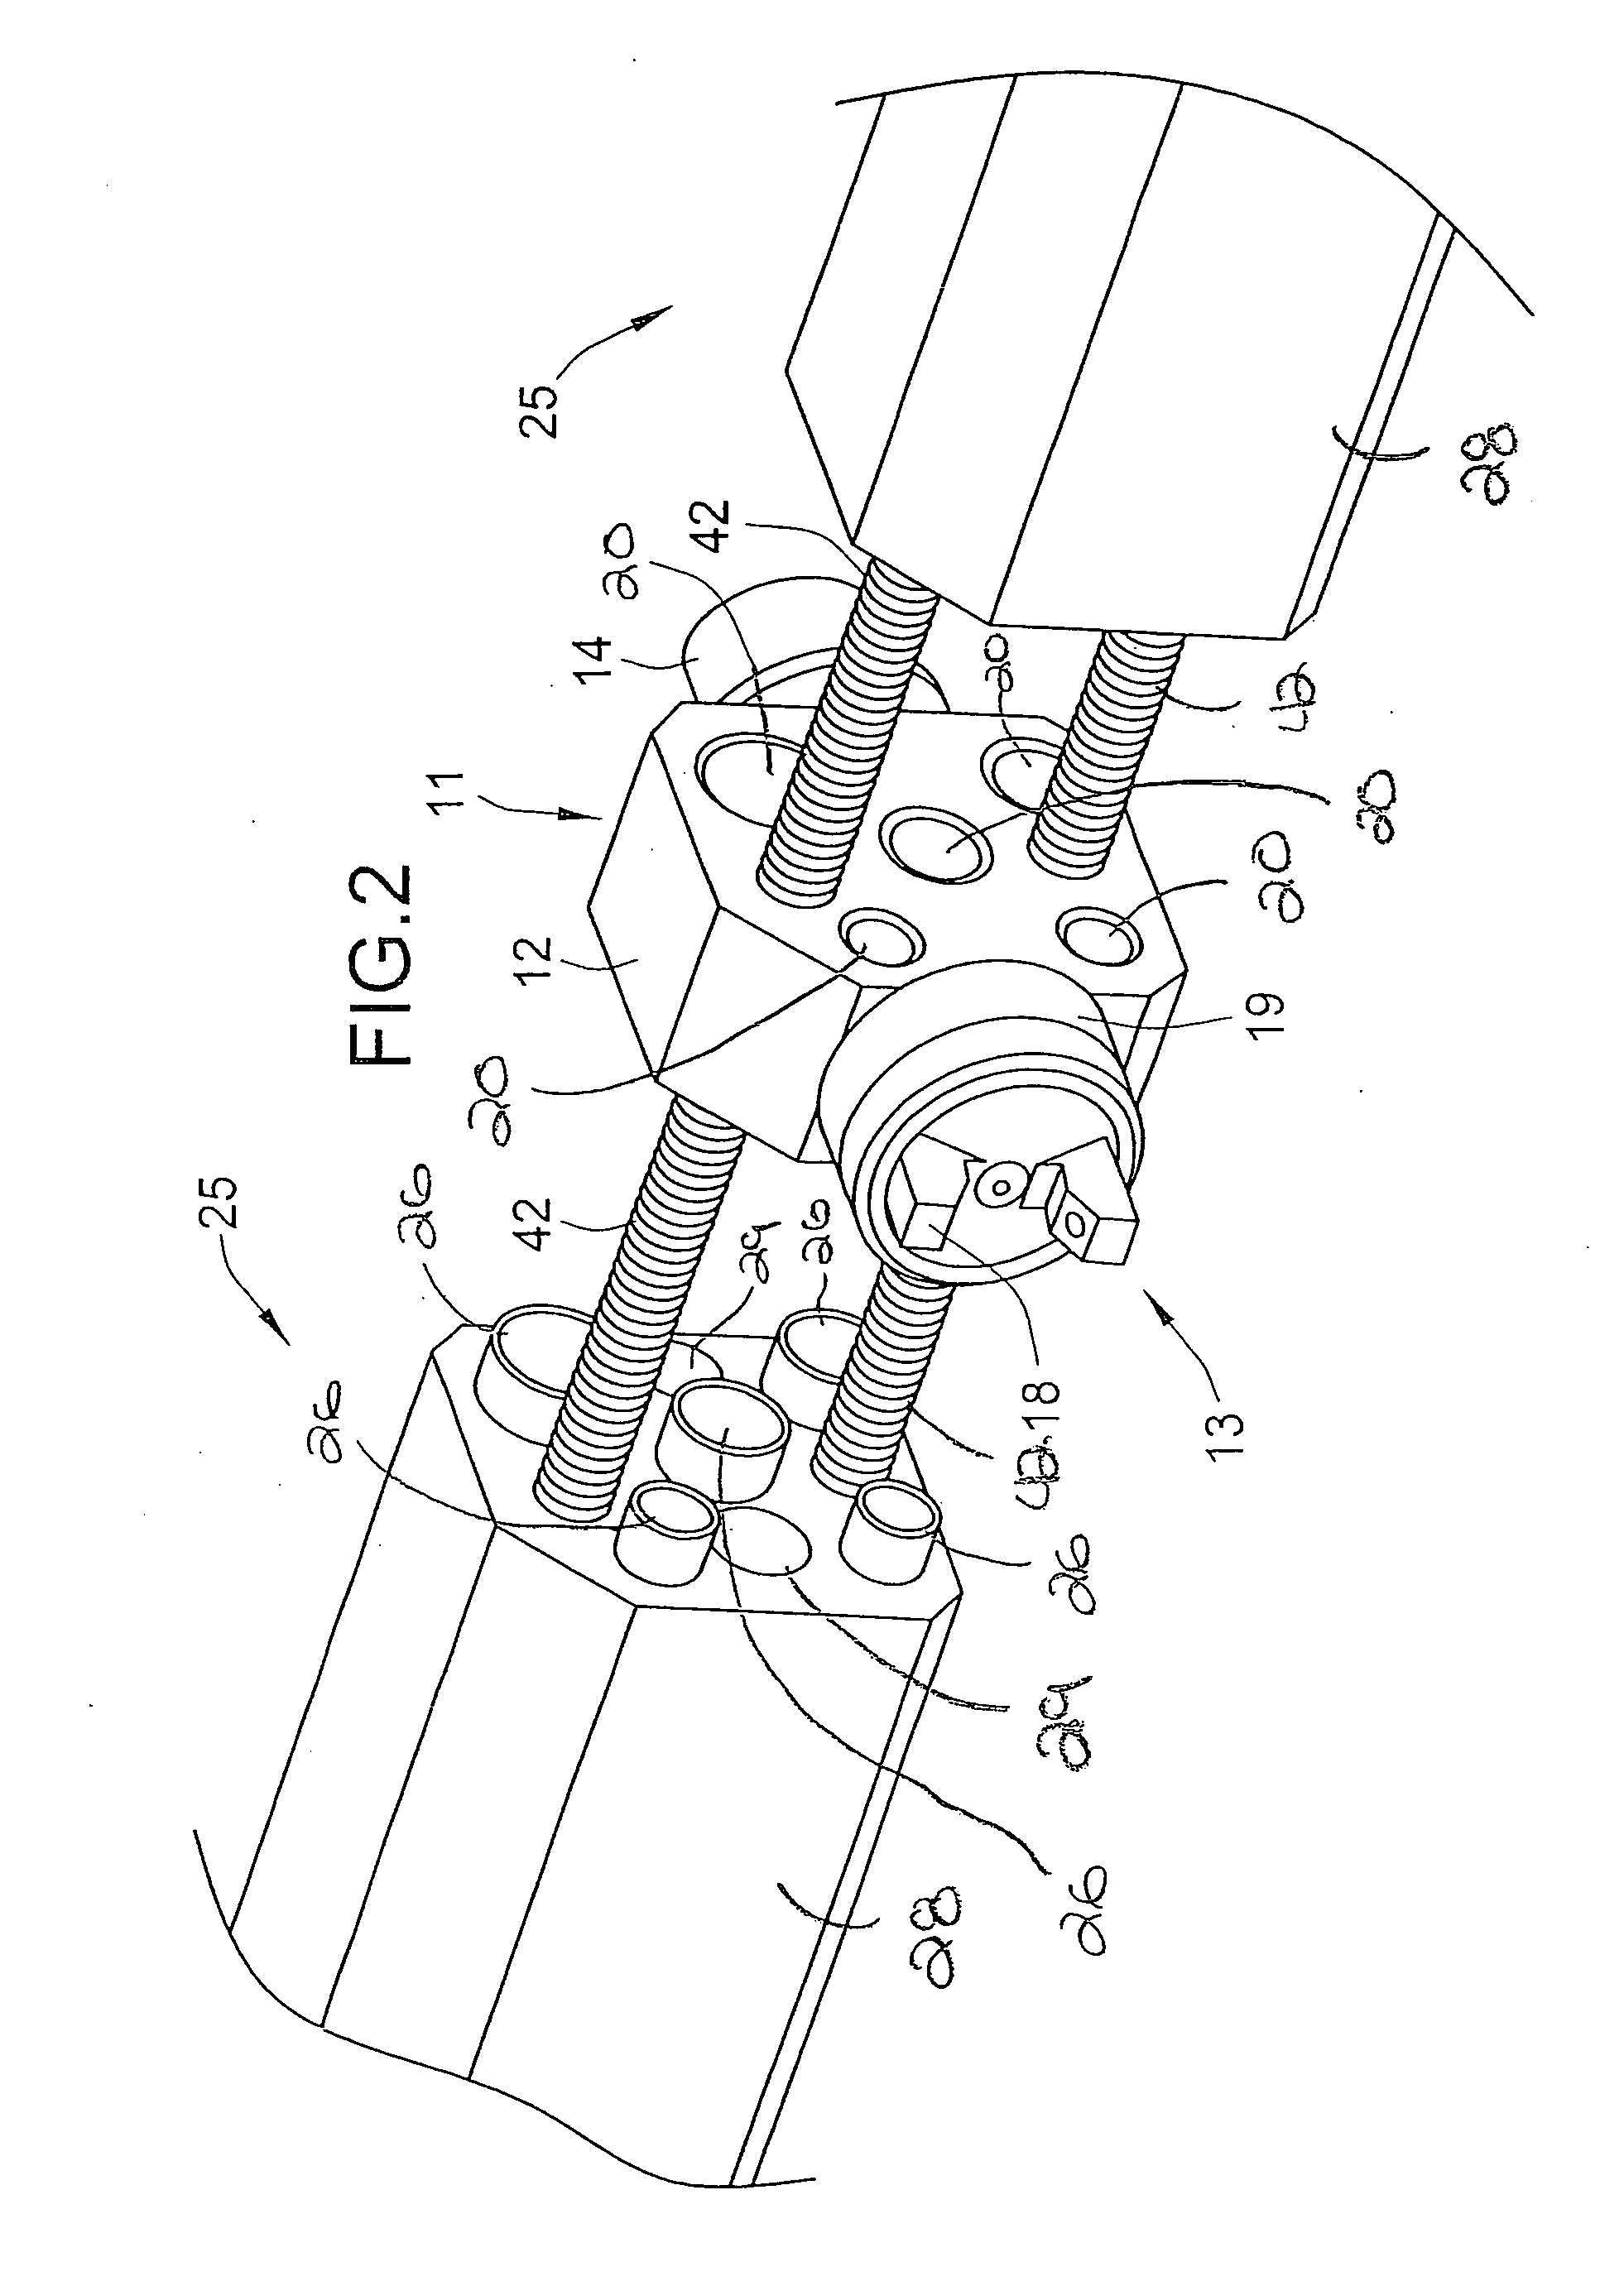 Modular automatic spray gun manifold